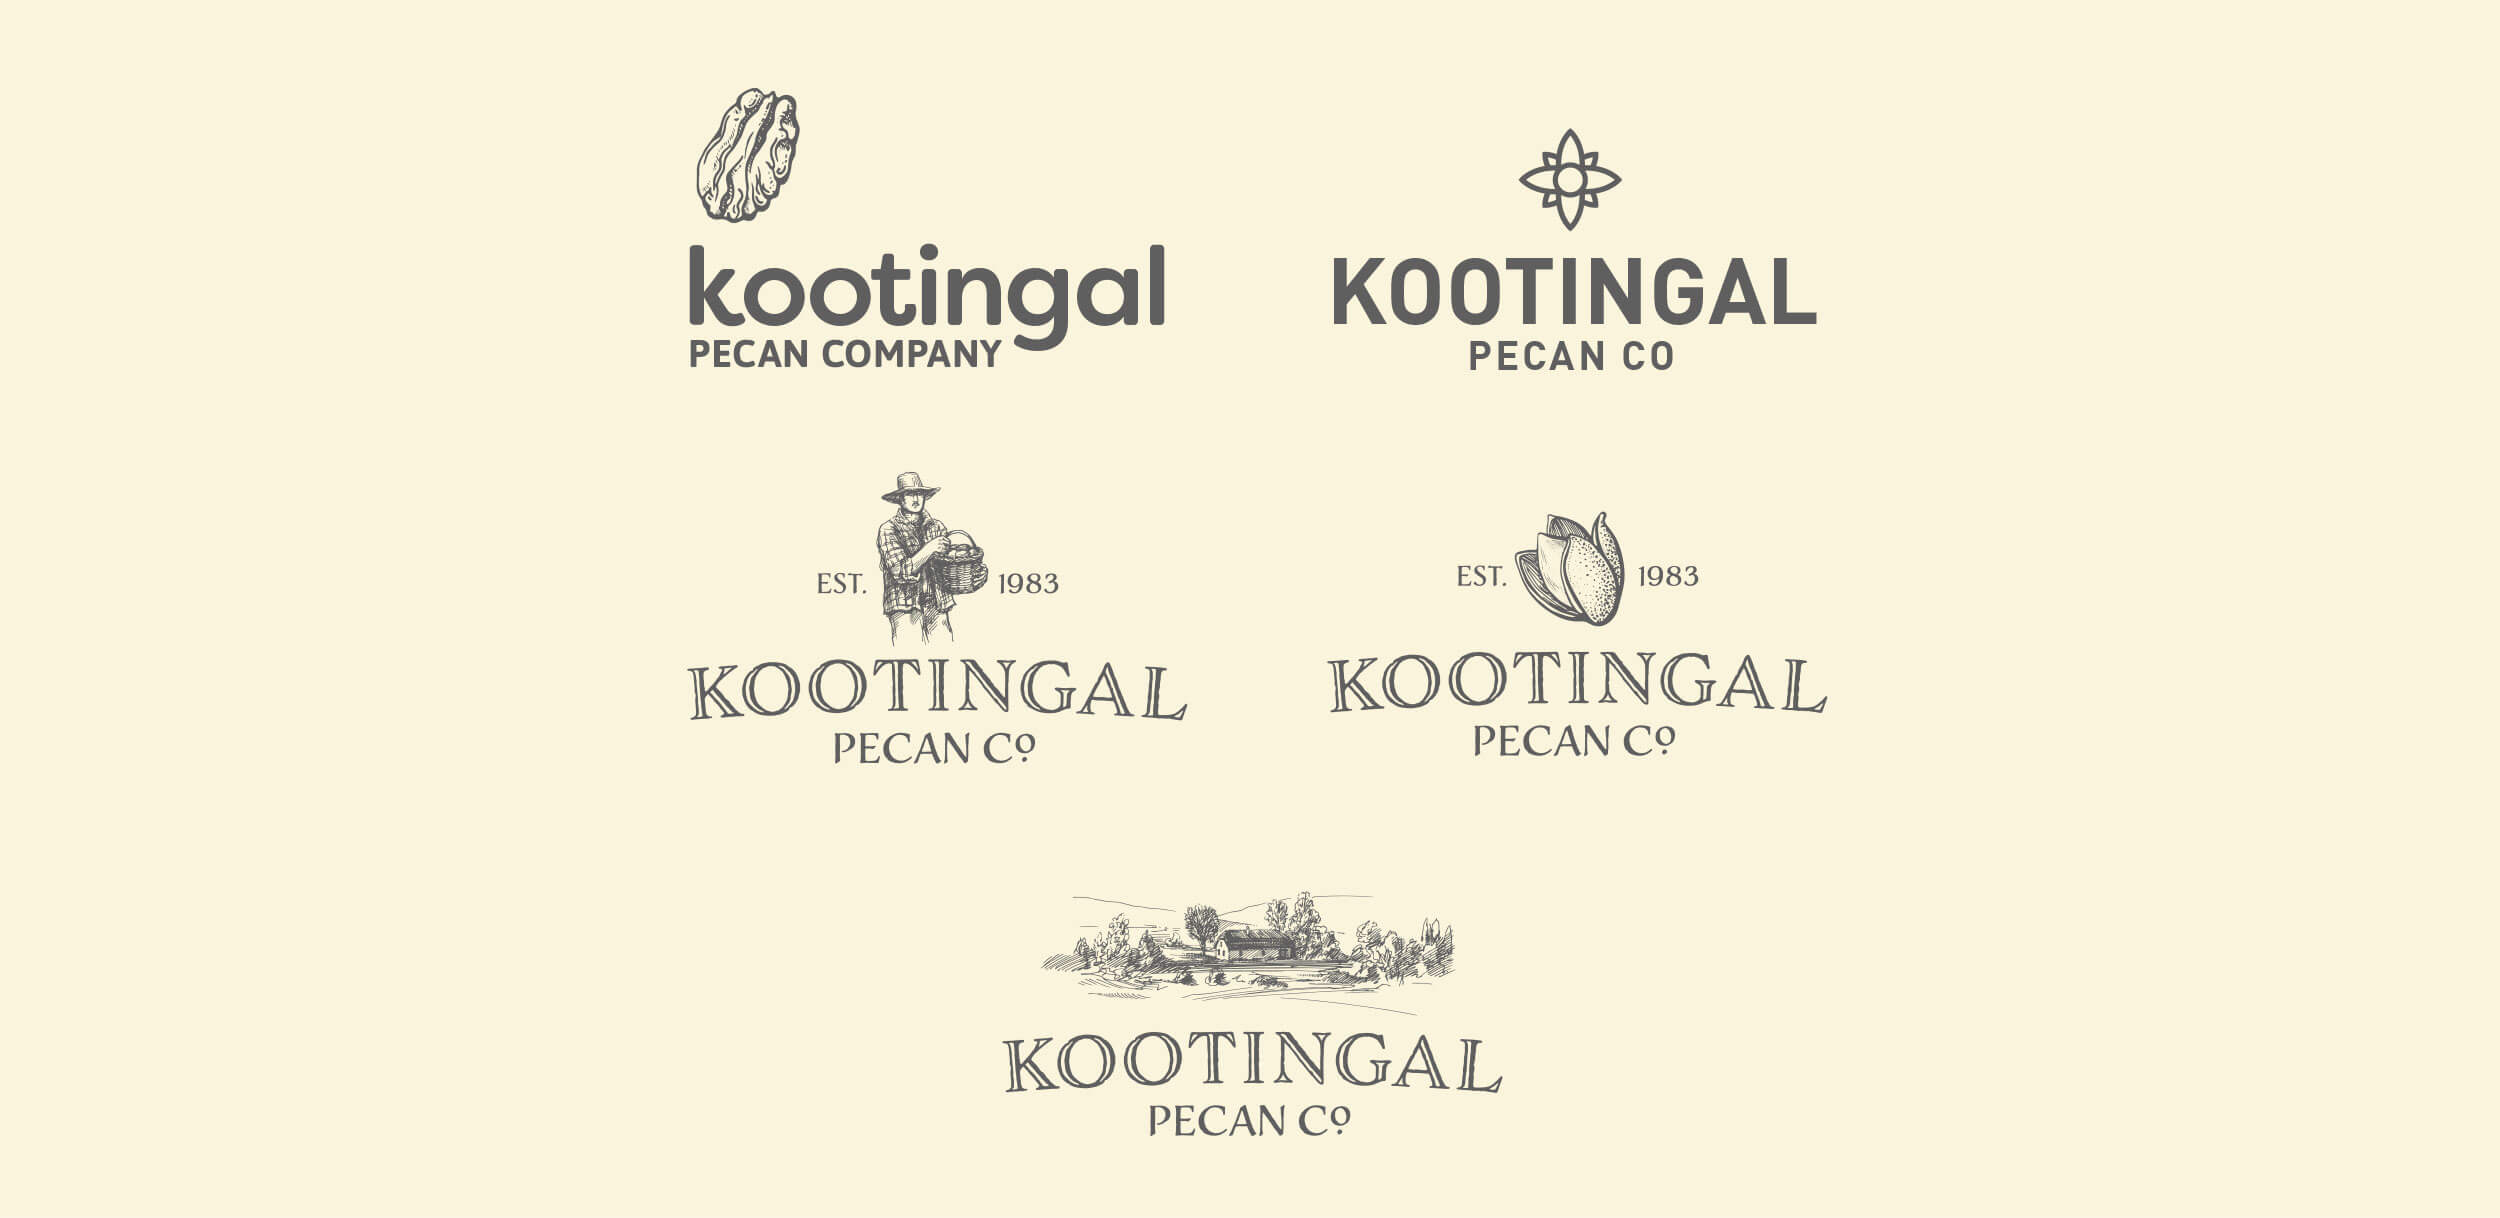 Various logo options for Kootingal Pecan Company